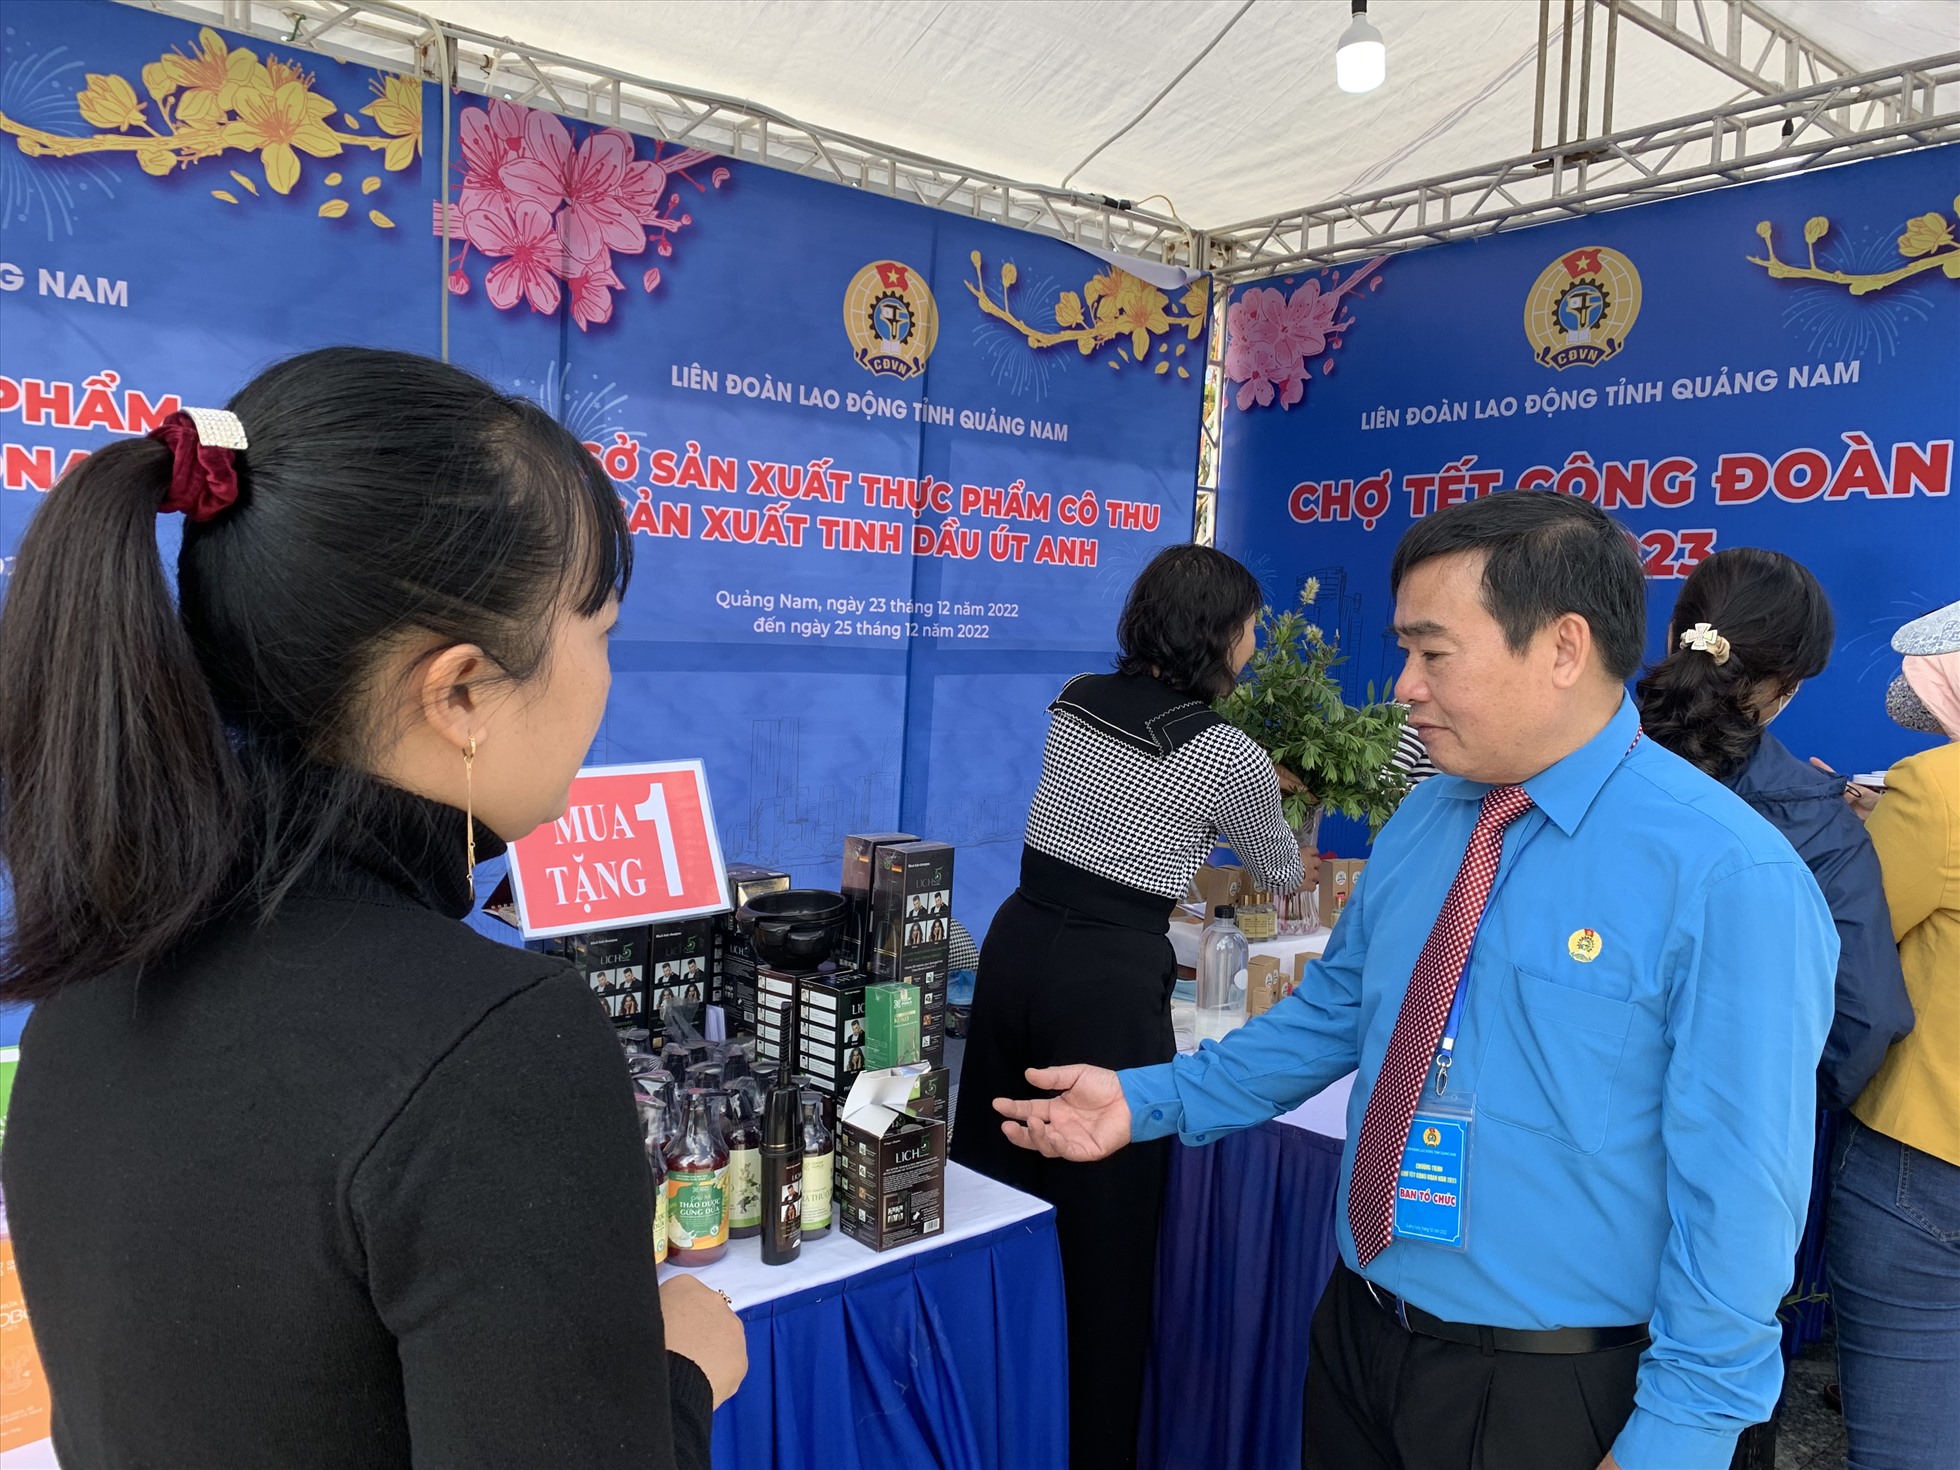 Ông Phan Xuân Quang, Chủ tịch LĐLĐ tỉnh Quảng Nam kiểm tra hàng hoá tại Chợ Tết Công đoàn. Ảnh: Tường Minh